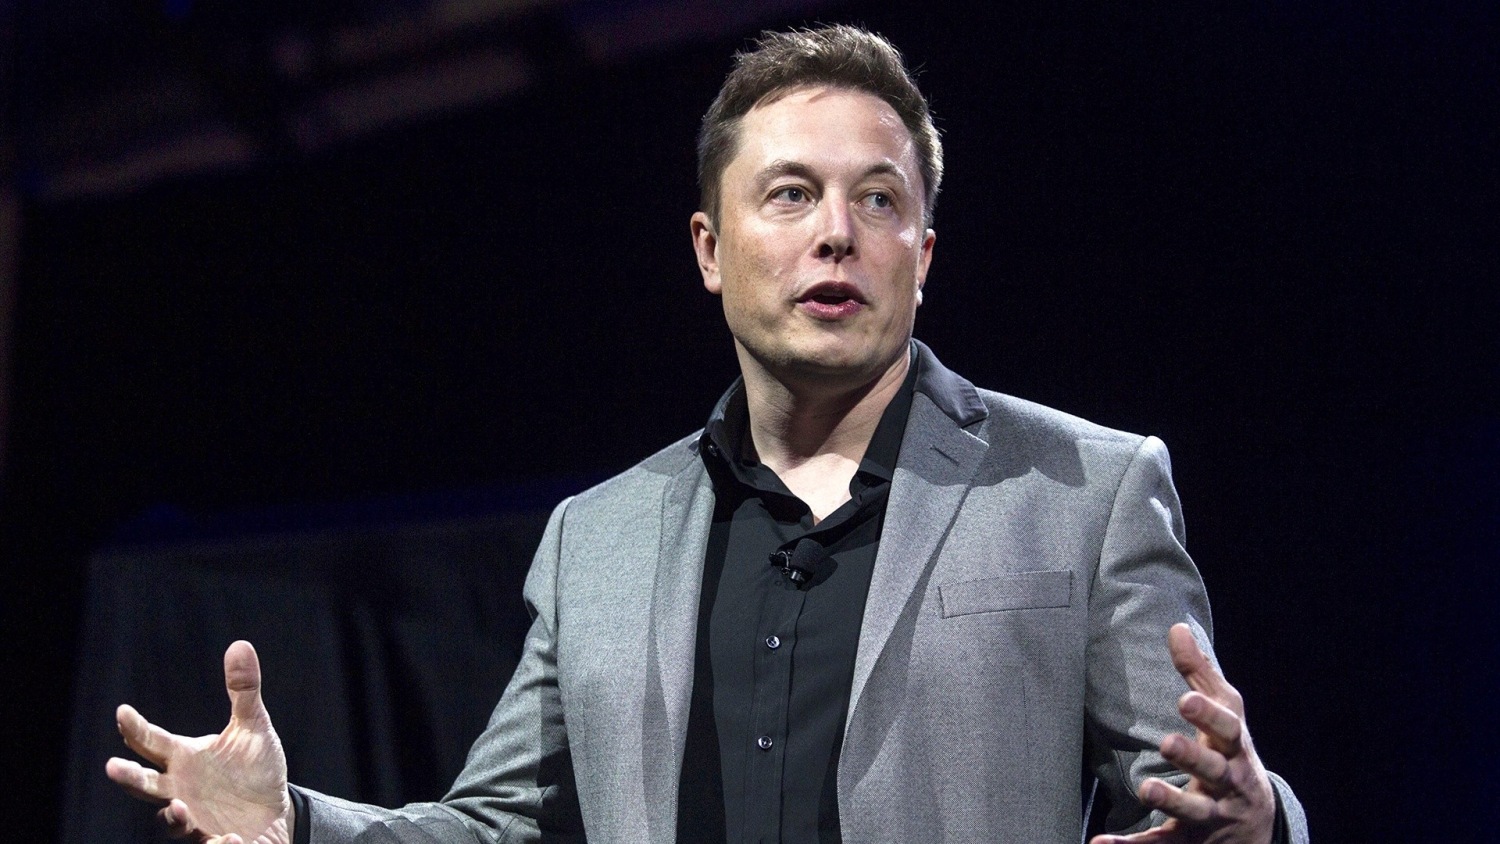 Ma dai! 20+  Verità che devi conoscere  Elon Musk Twitter: But what is the successful billionaire really like?